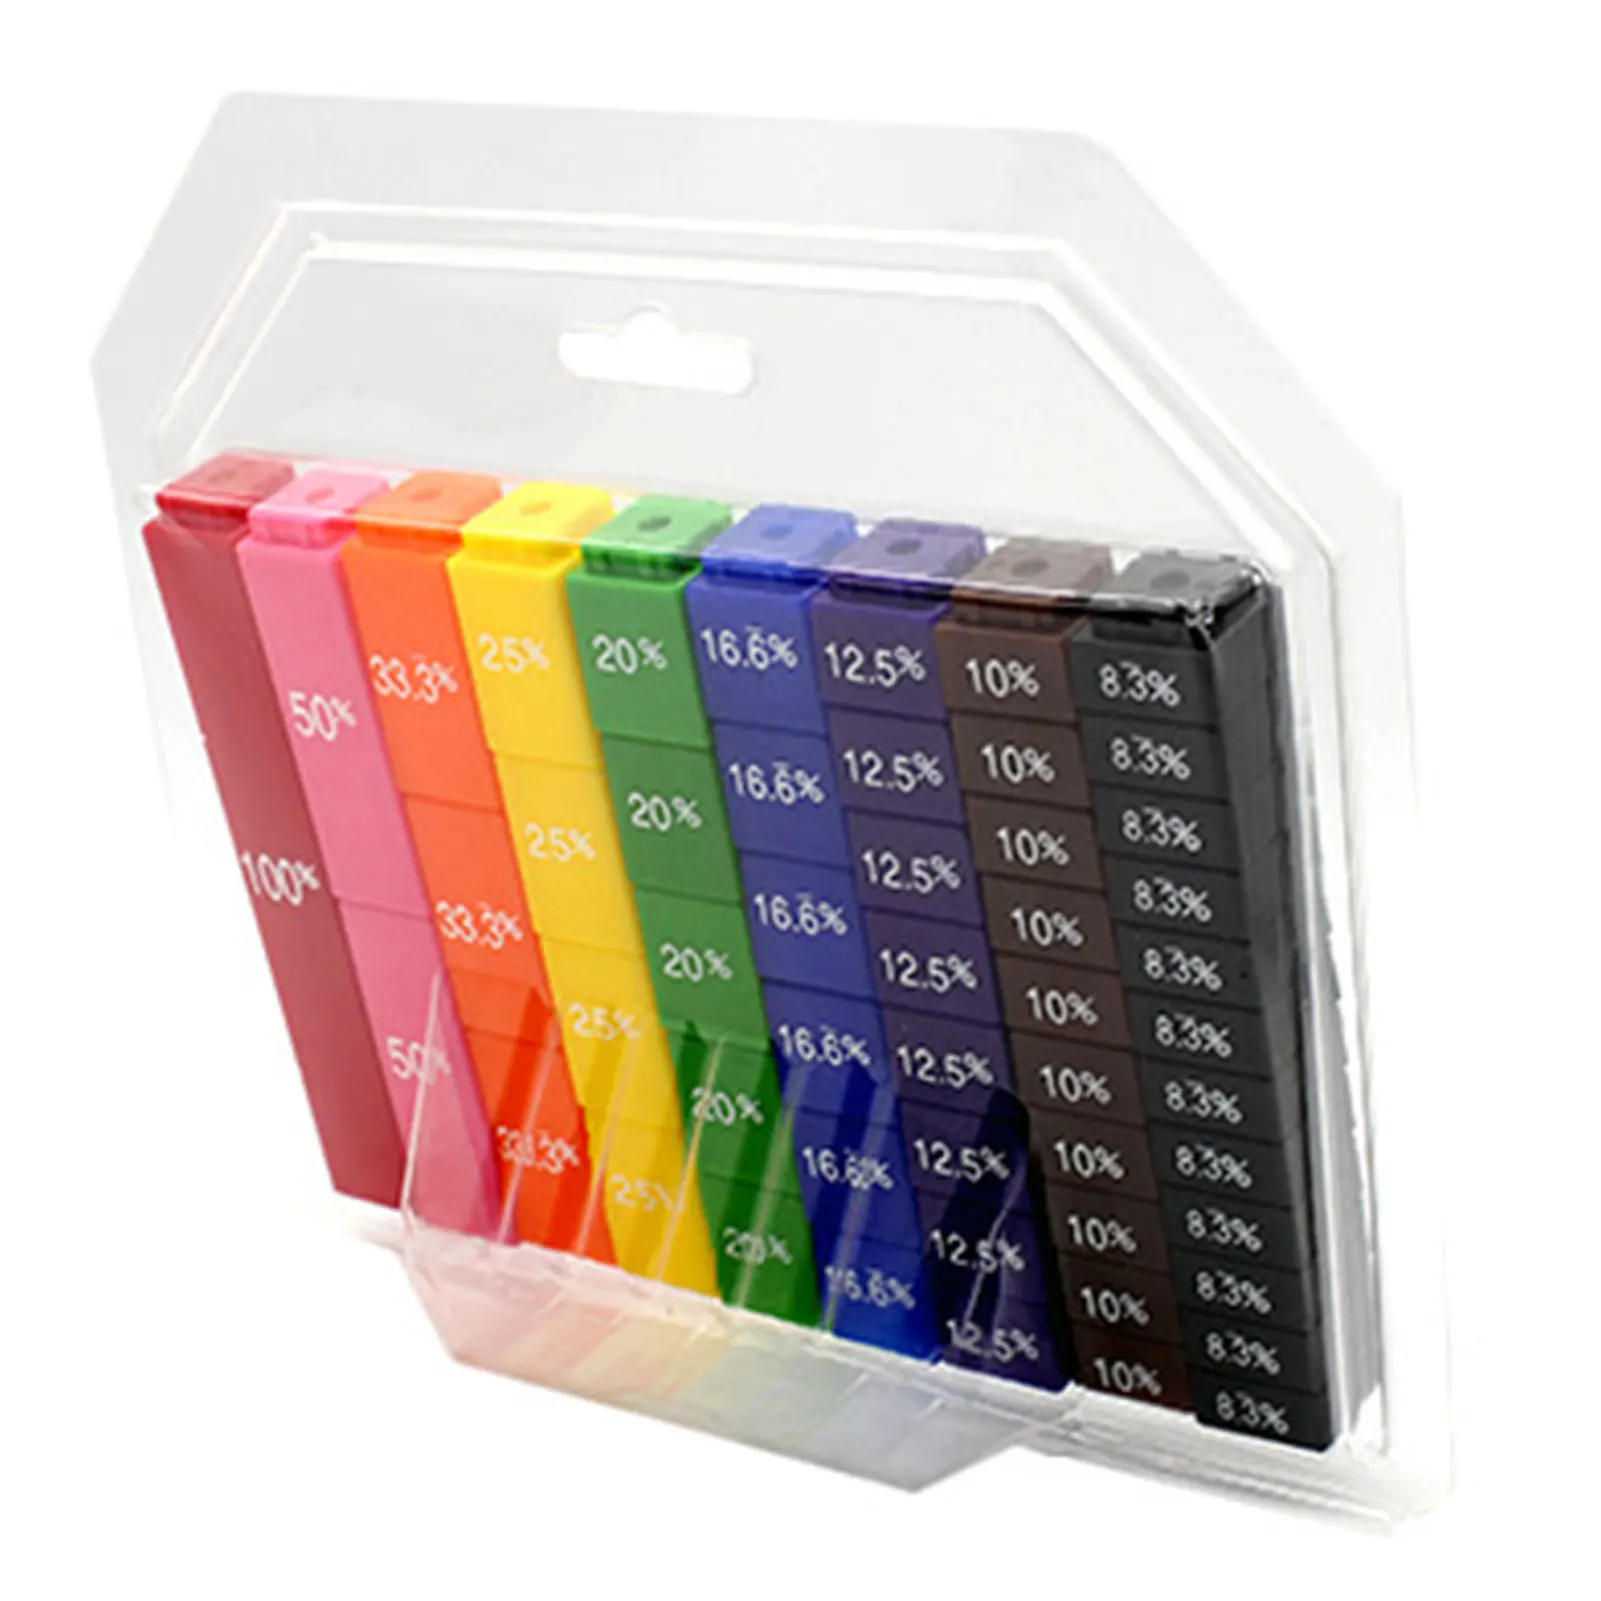 

Кубики-манипуляторы цветные, 51 шт., тактильное обучение, сравнение и оценка заказа для учеников начальной школы